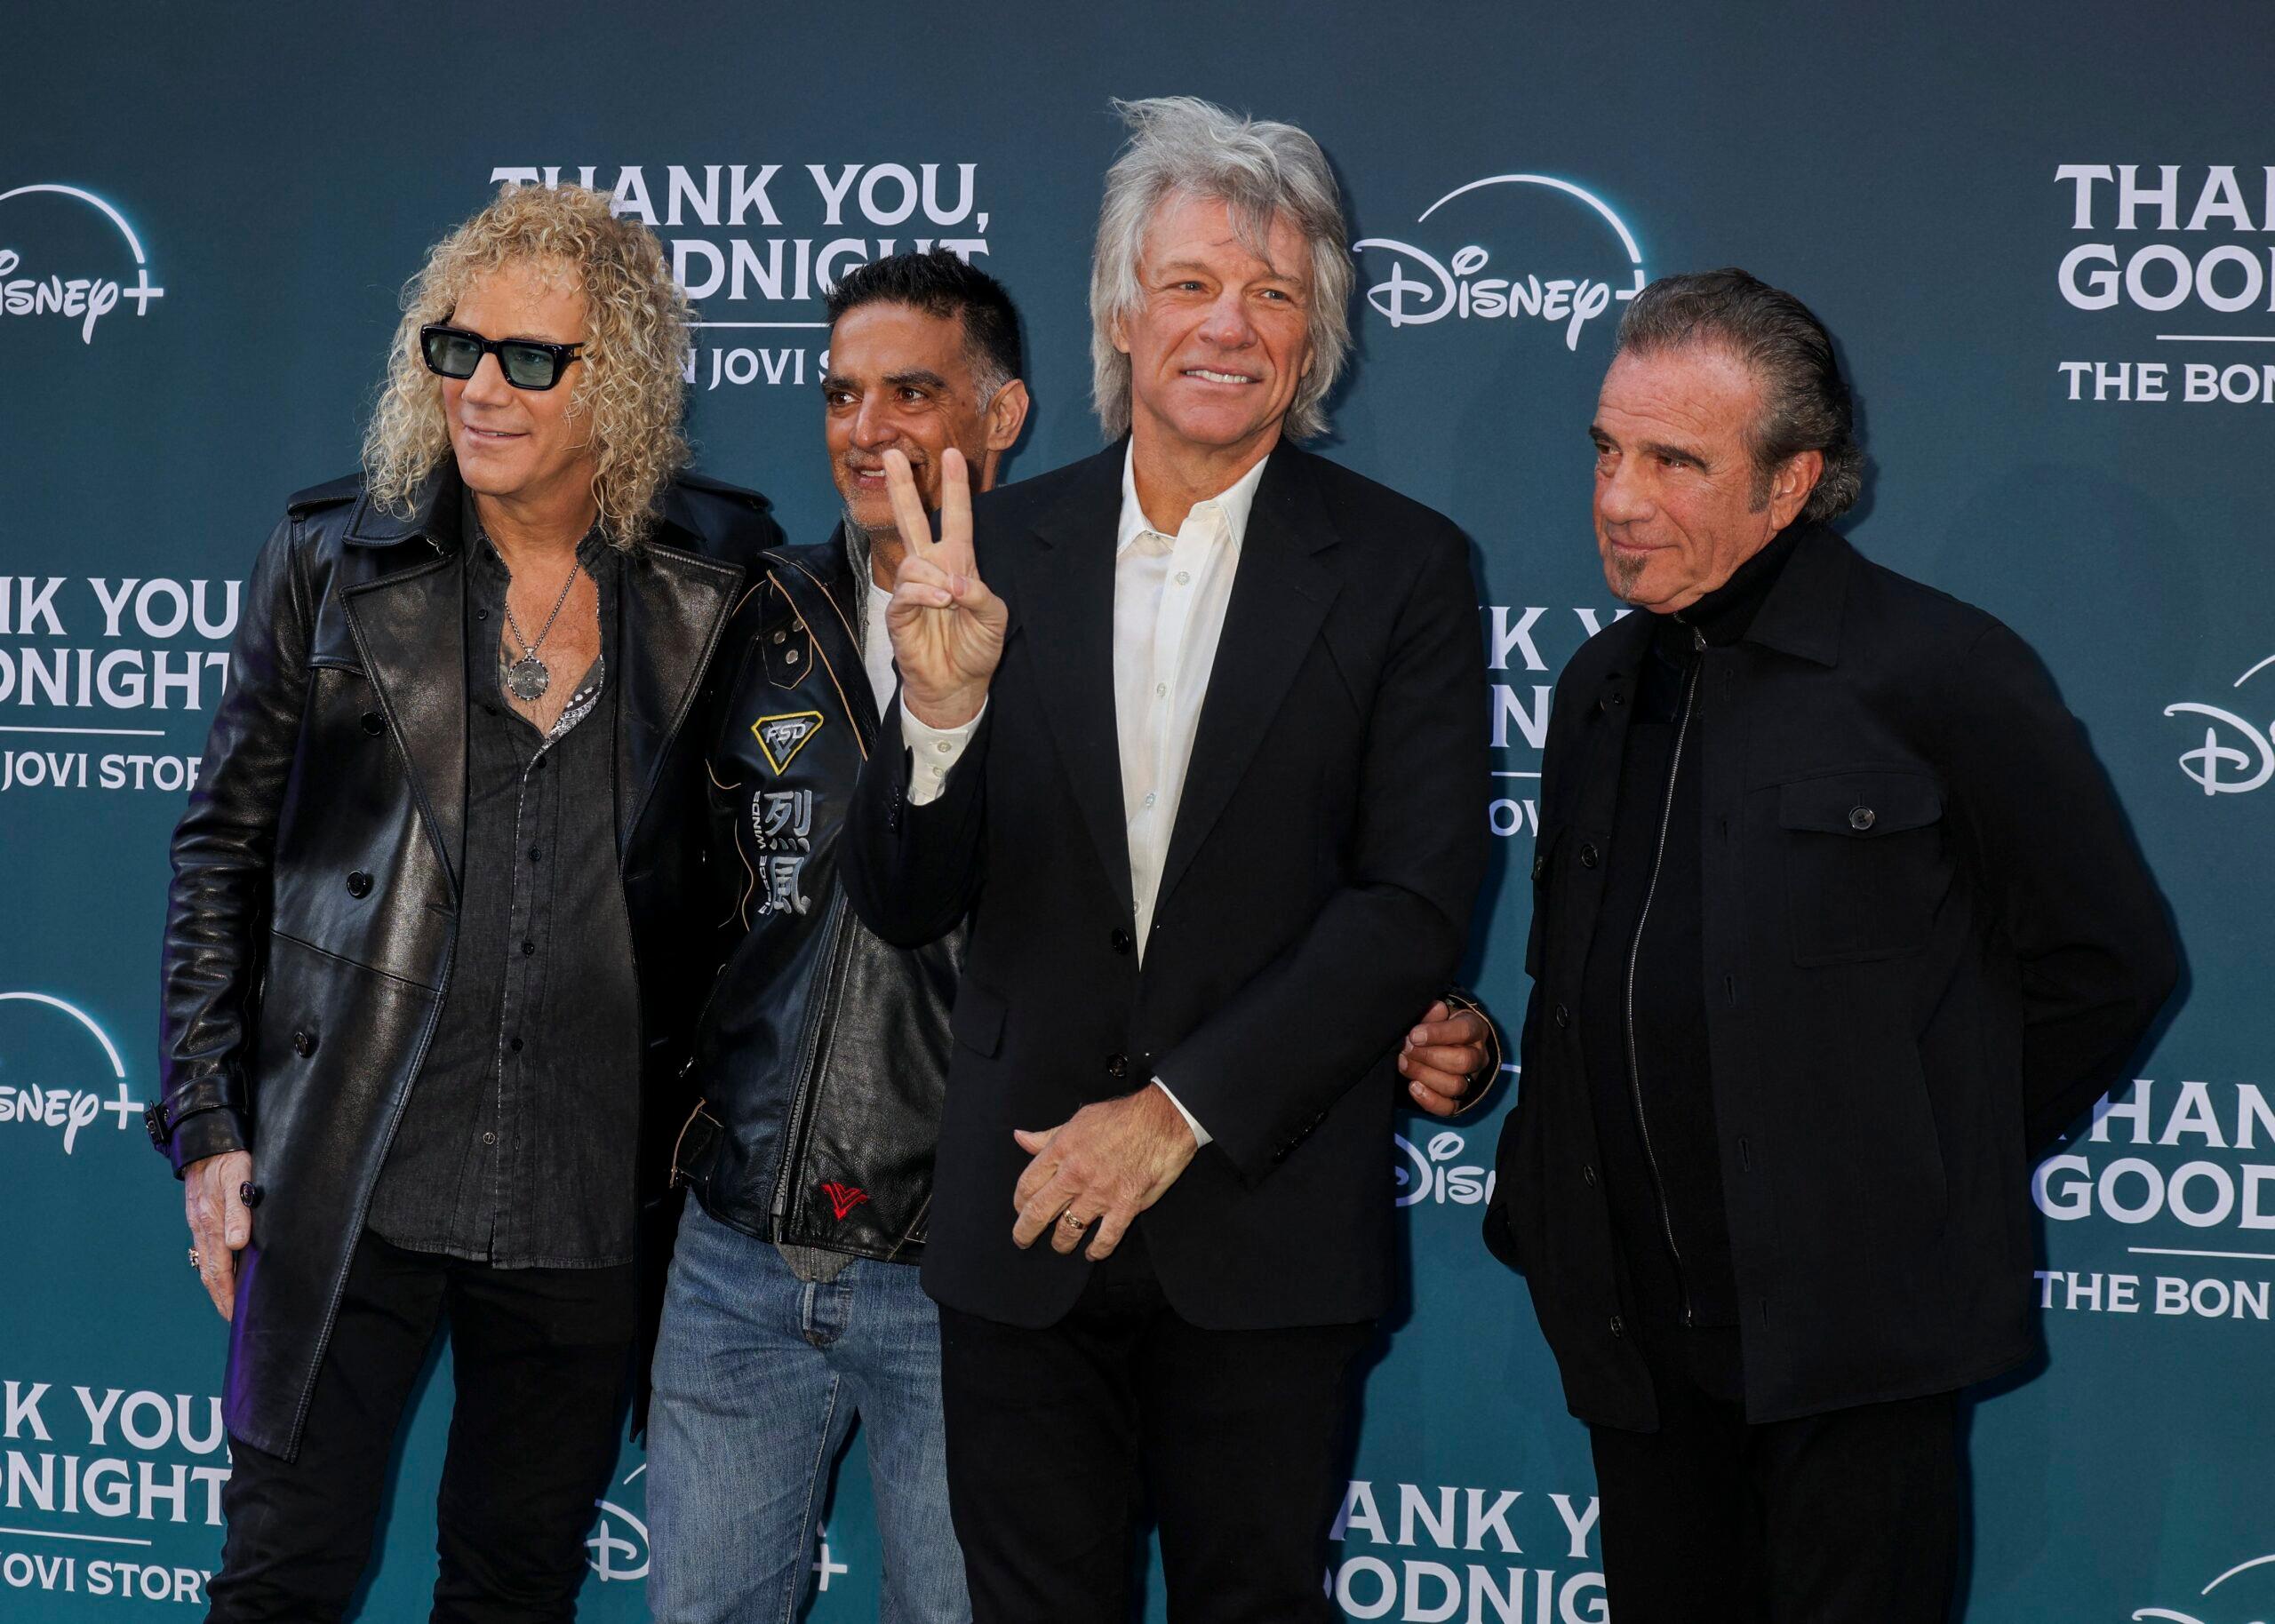 The band Bon Jovi poses on a red carpet.